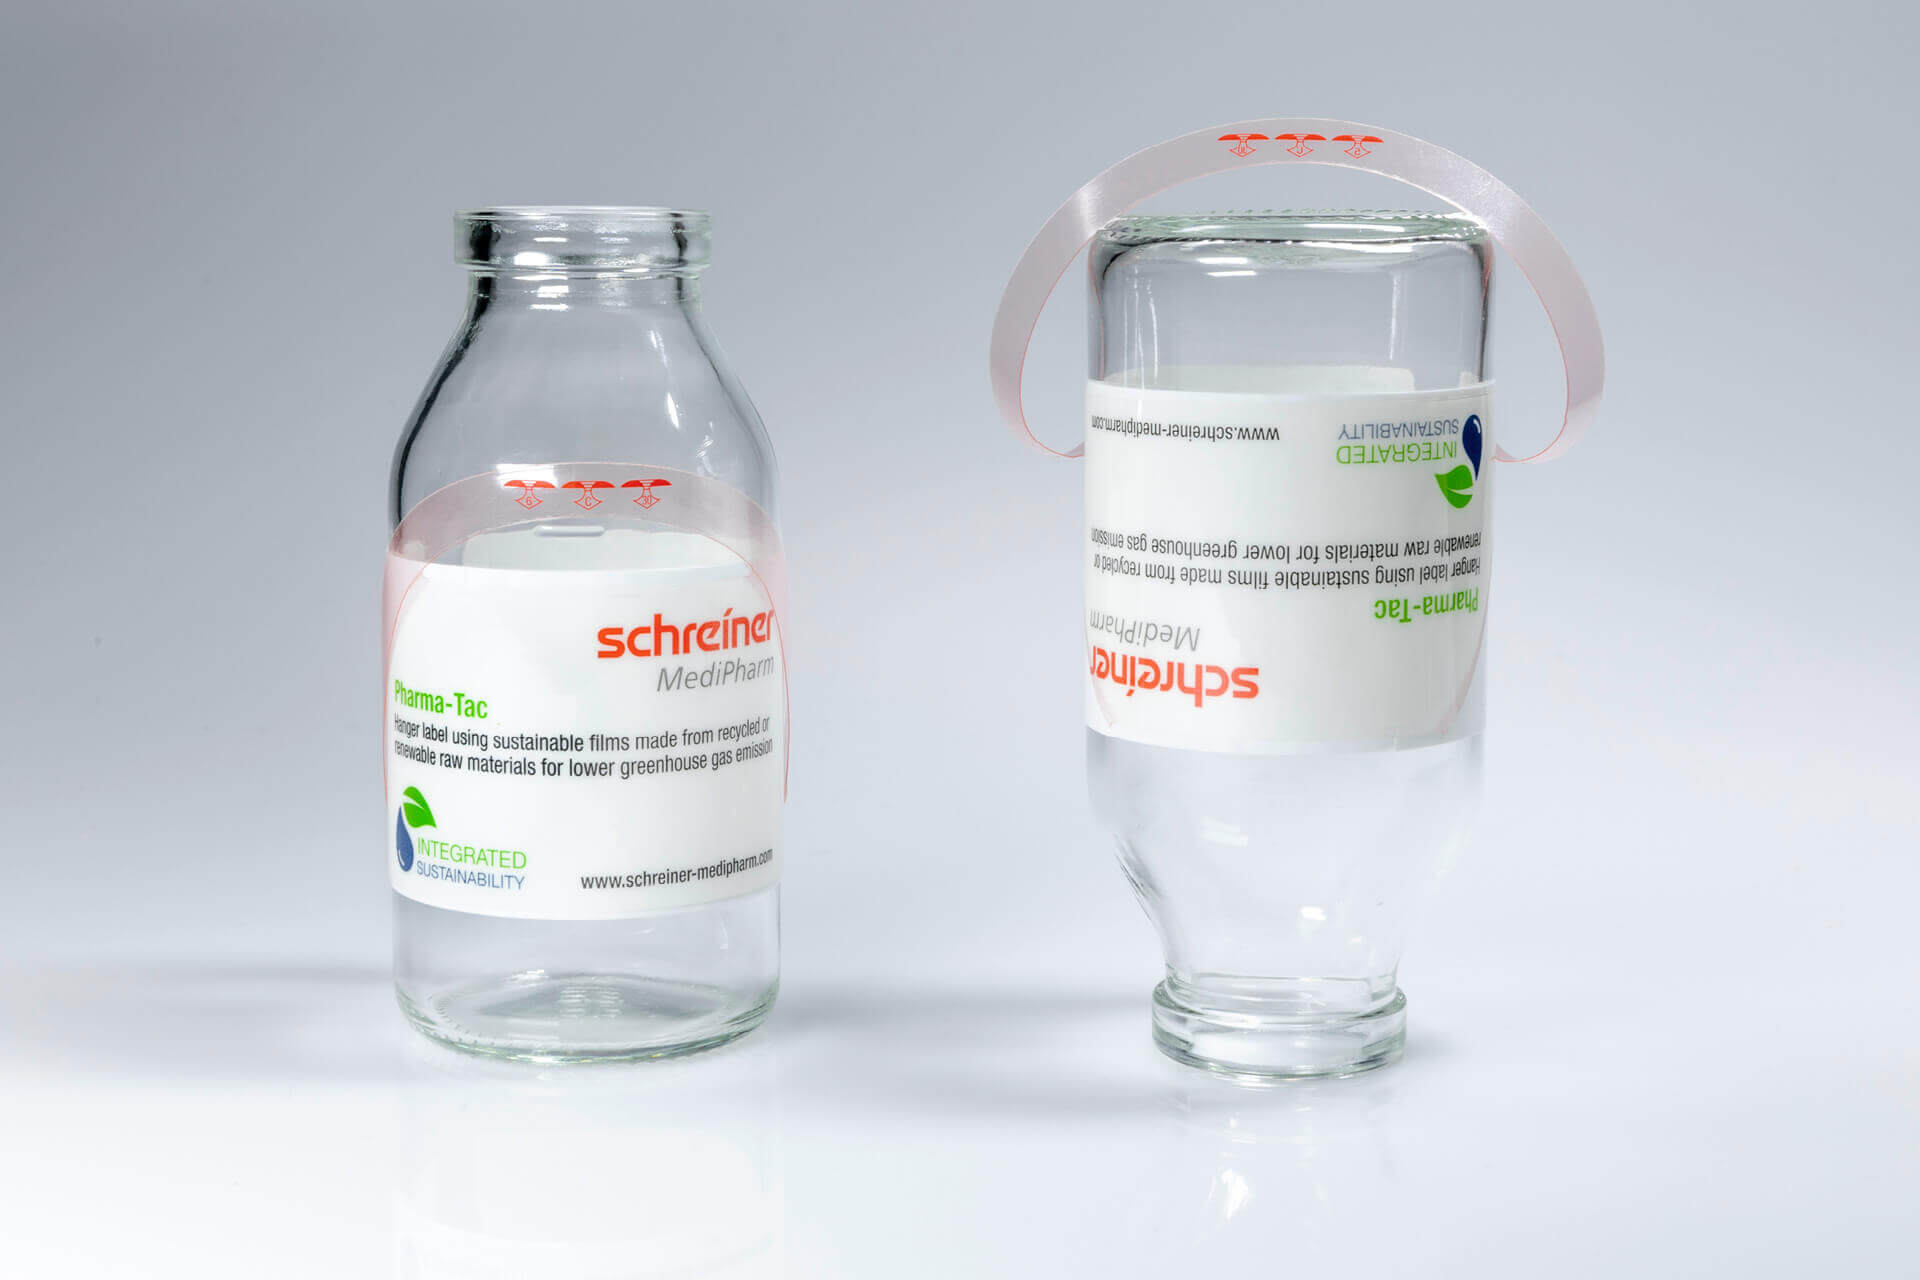 Das Hänger-Label Pharma-Tac gibt es schon seit 1987. Es wurde kontinuierlich um verschiedene Features und Varianten erweitert und wird jetzt auch aus umweltschonendem Folienmaterial gefertigt.